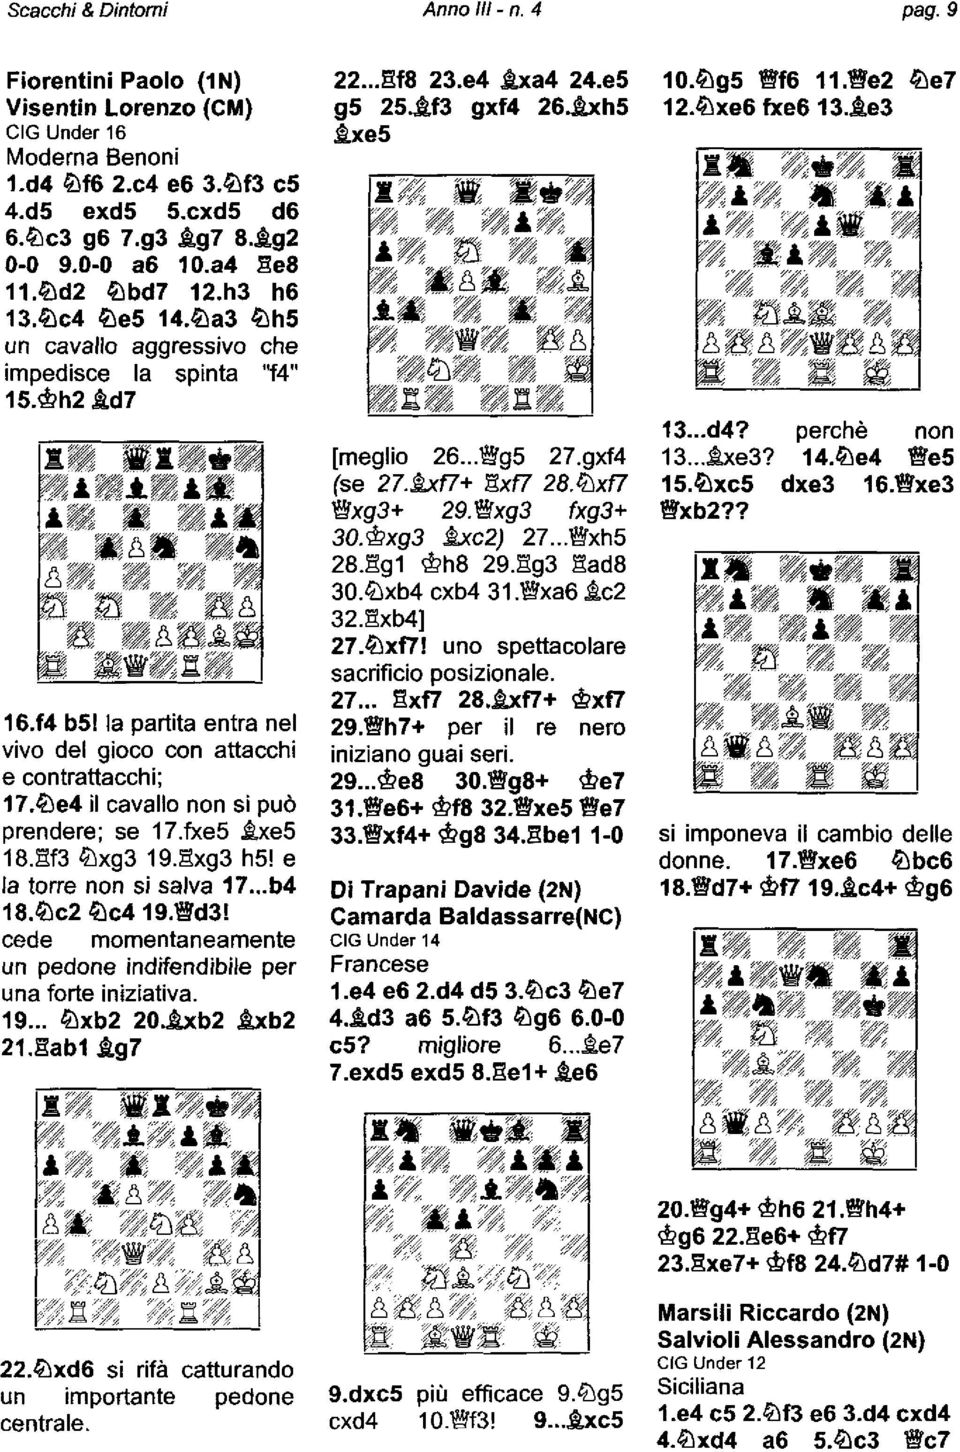 f4 bsl la partita entra nel vivo del gioco con attacchi e contrattacchi; 17.a'e4 il cavallo non si può prendere; se 17.fxe5 fues 1B.EB Axg3 19.Exg3 h5! e la tore non si salva 17...b4 $.a,c2 Ac419.